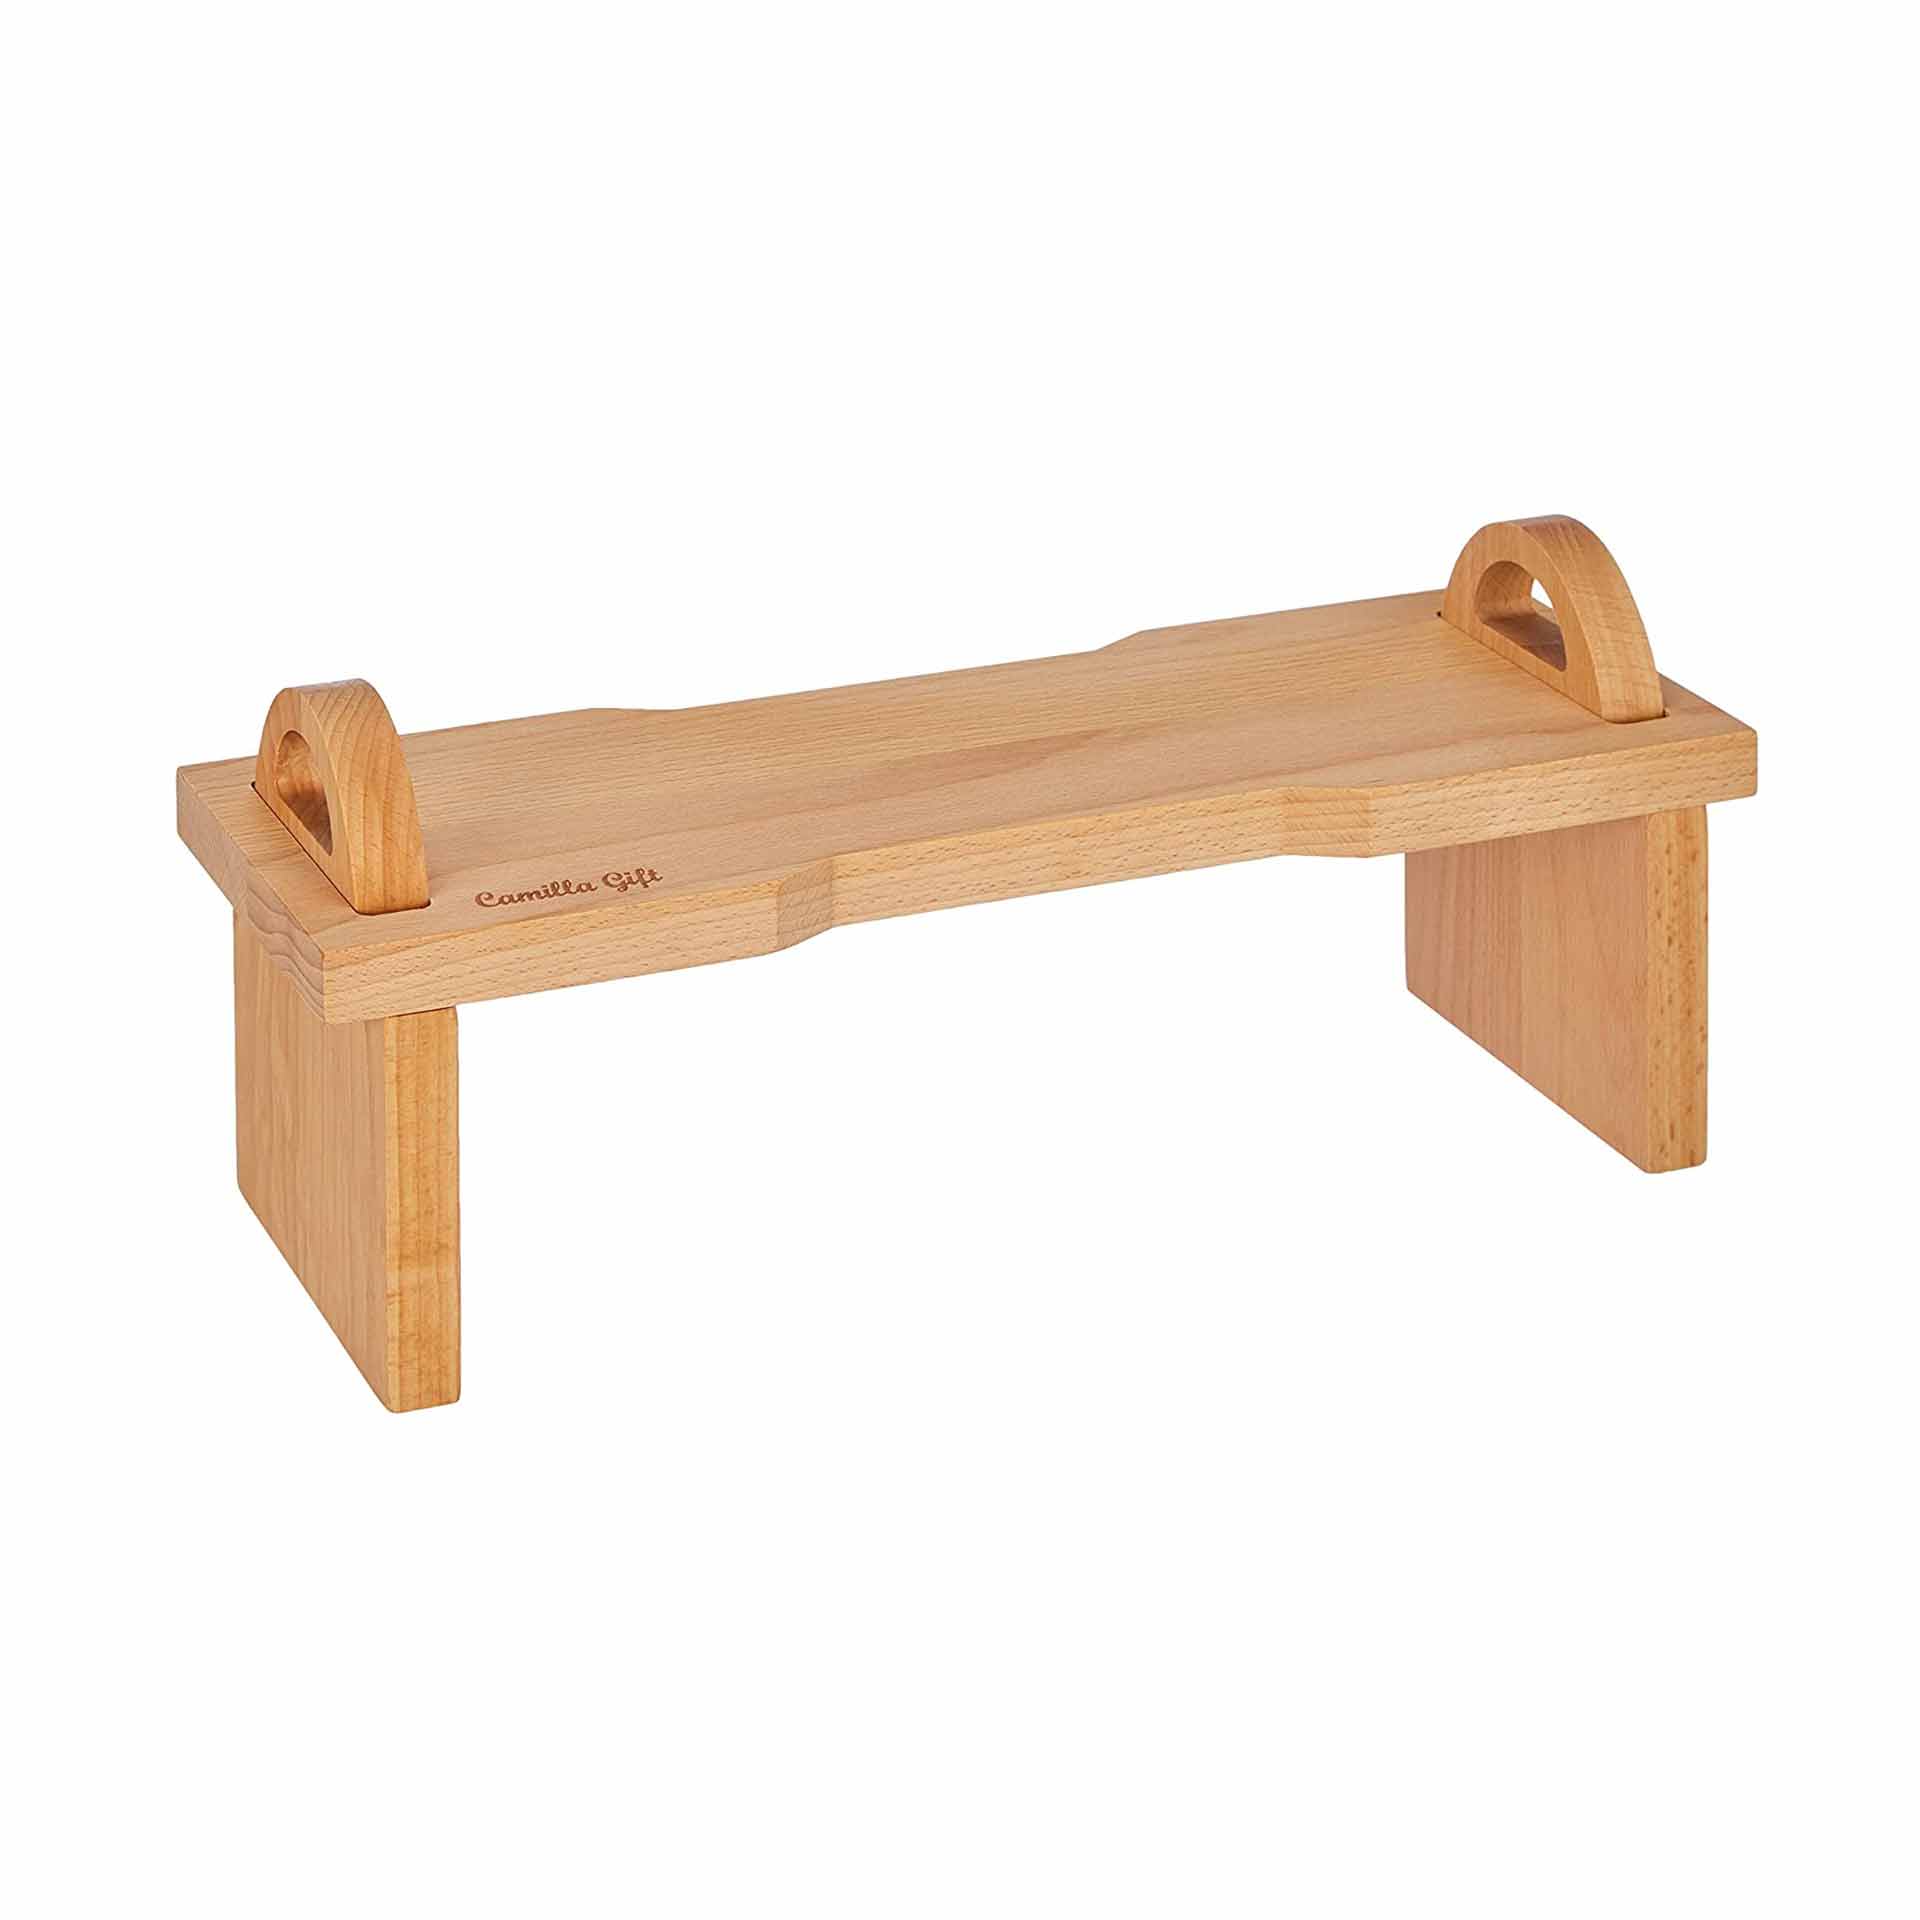 Tagliere alzatina da tavola scomponibile, in legno di faggio